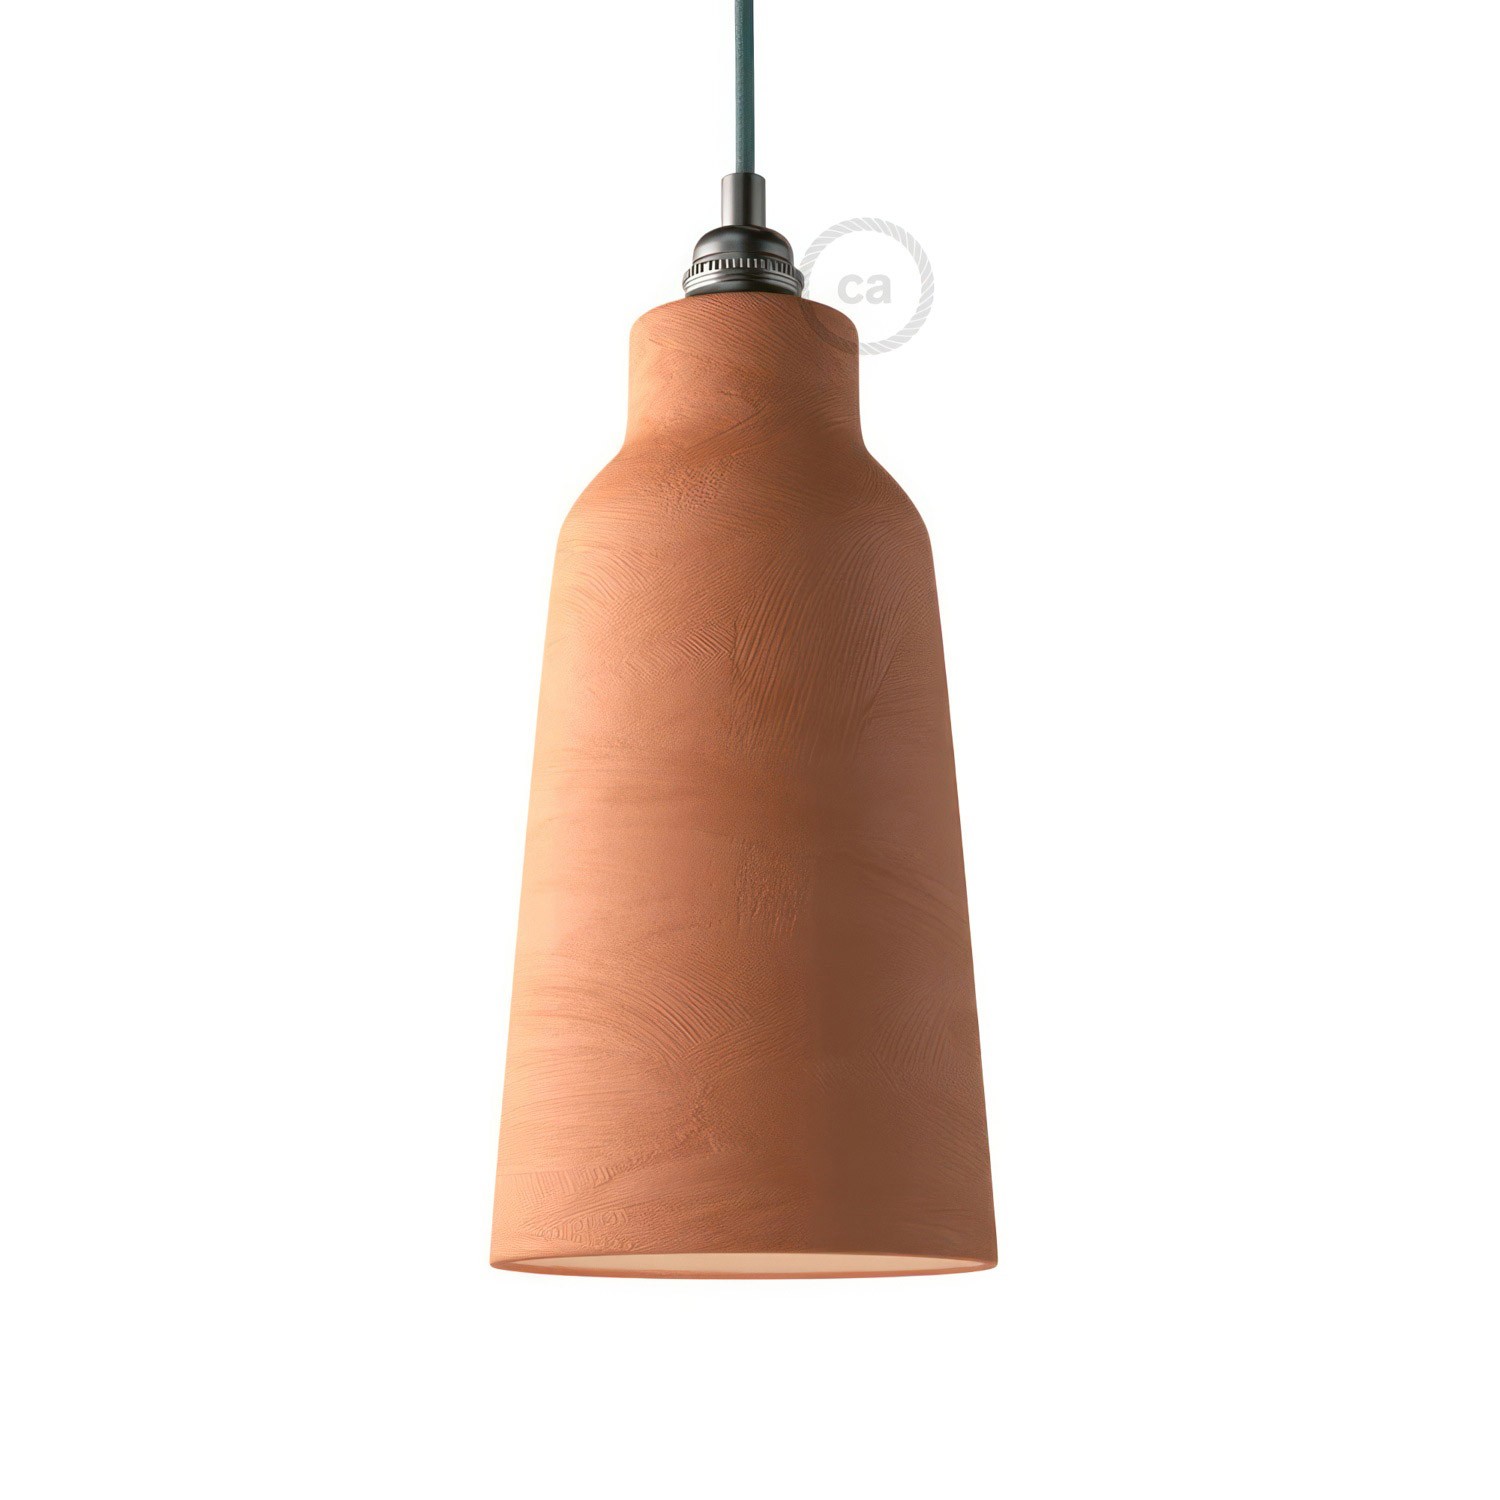 Bottiglia lampskärm i keramik, Materia kolletion - Tillverkad i Italien